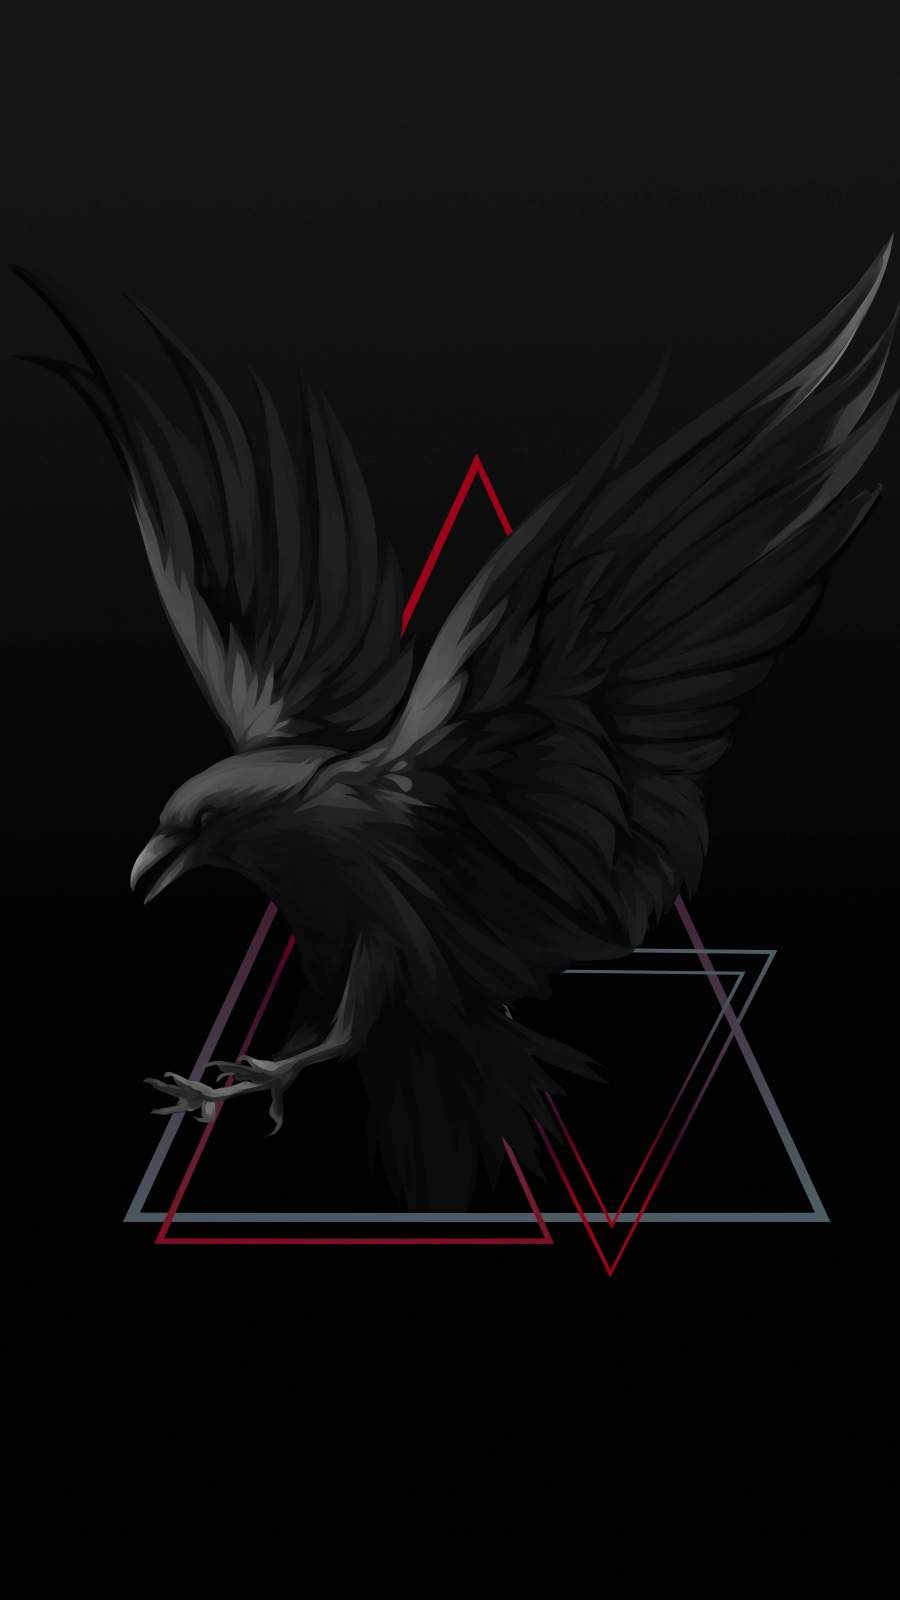 The Raven iPhone Wallpaper. Desain grafis, Gambar bergerak, Gambar